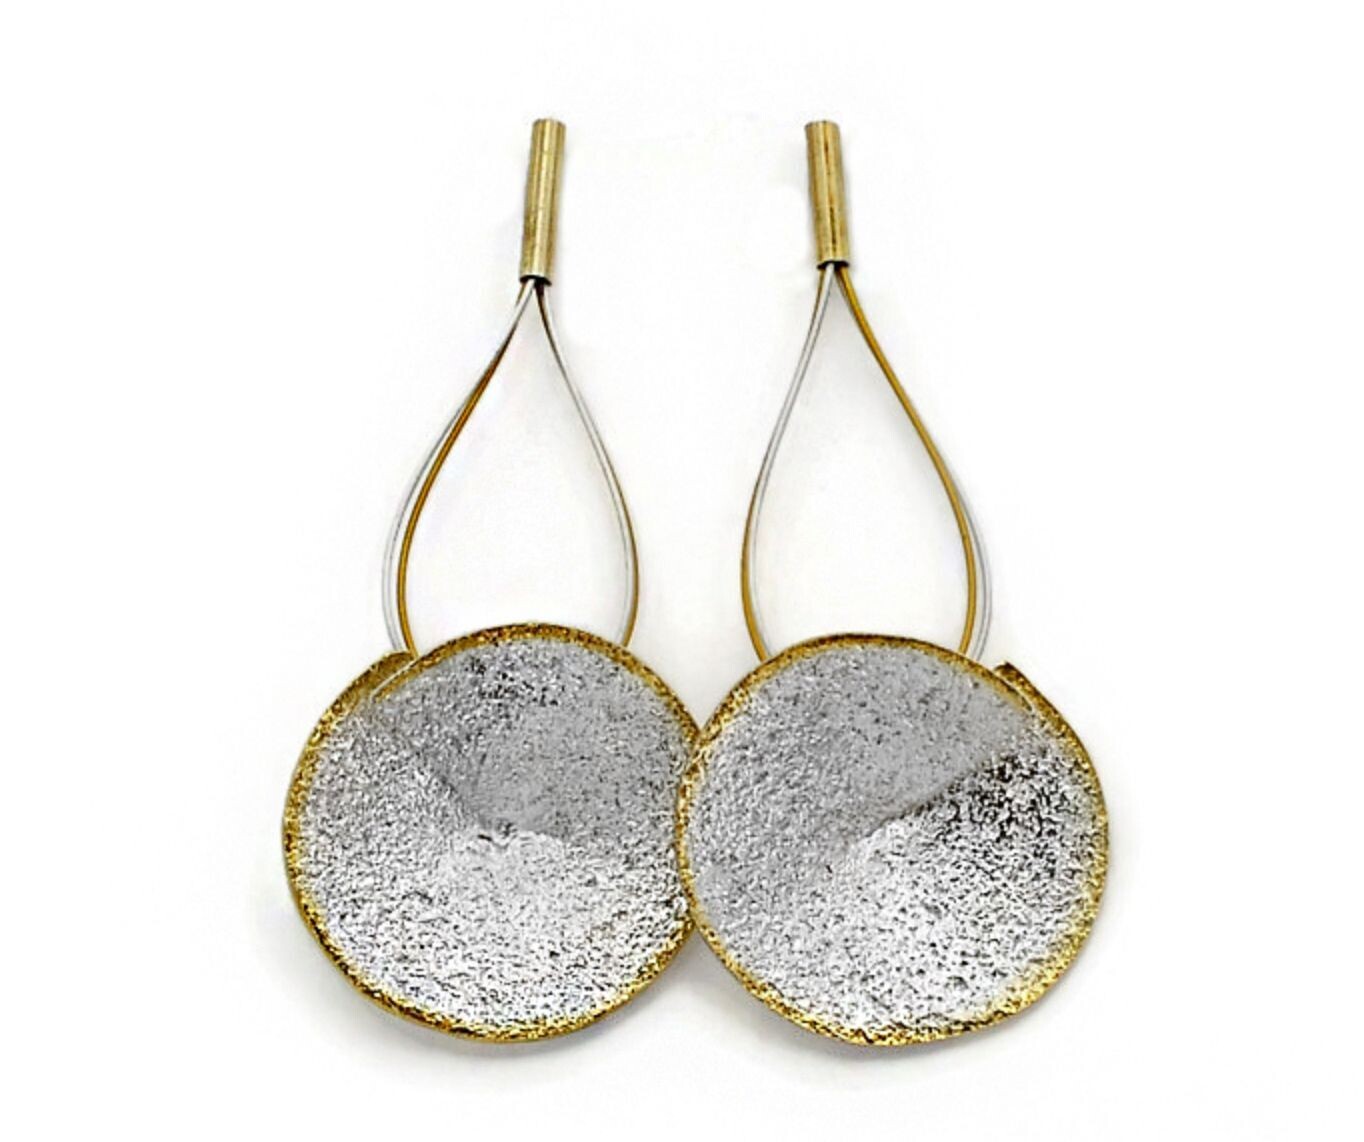 Silver & gold drop earrings